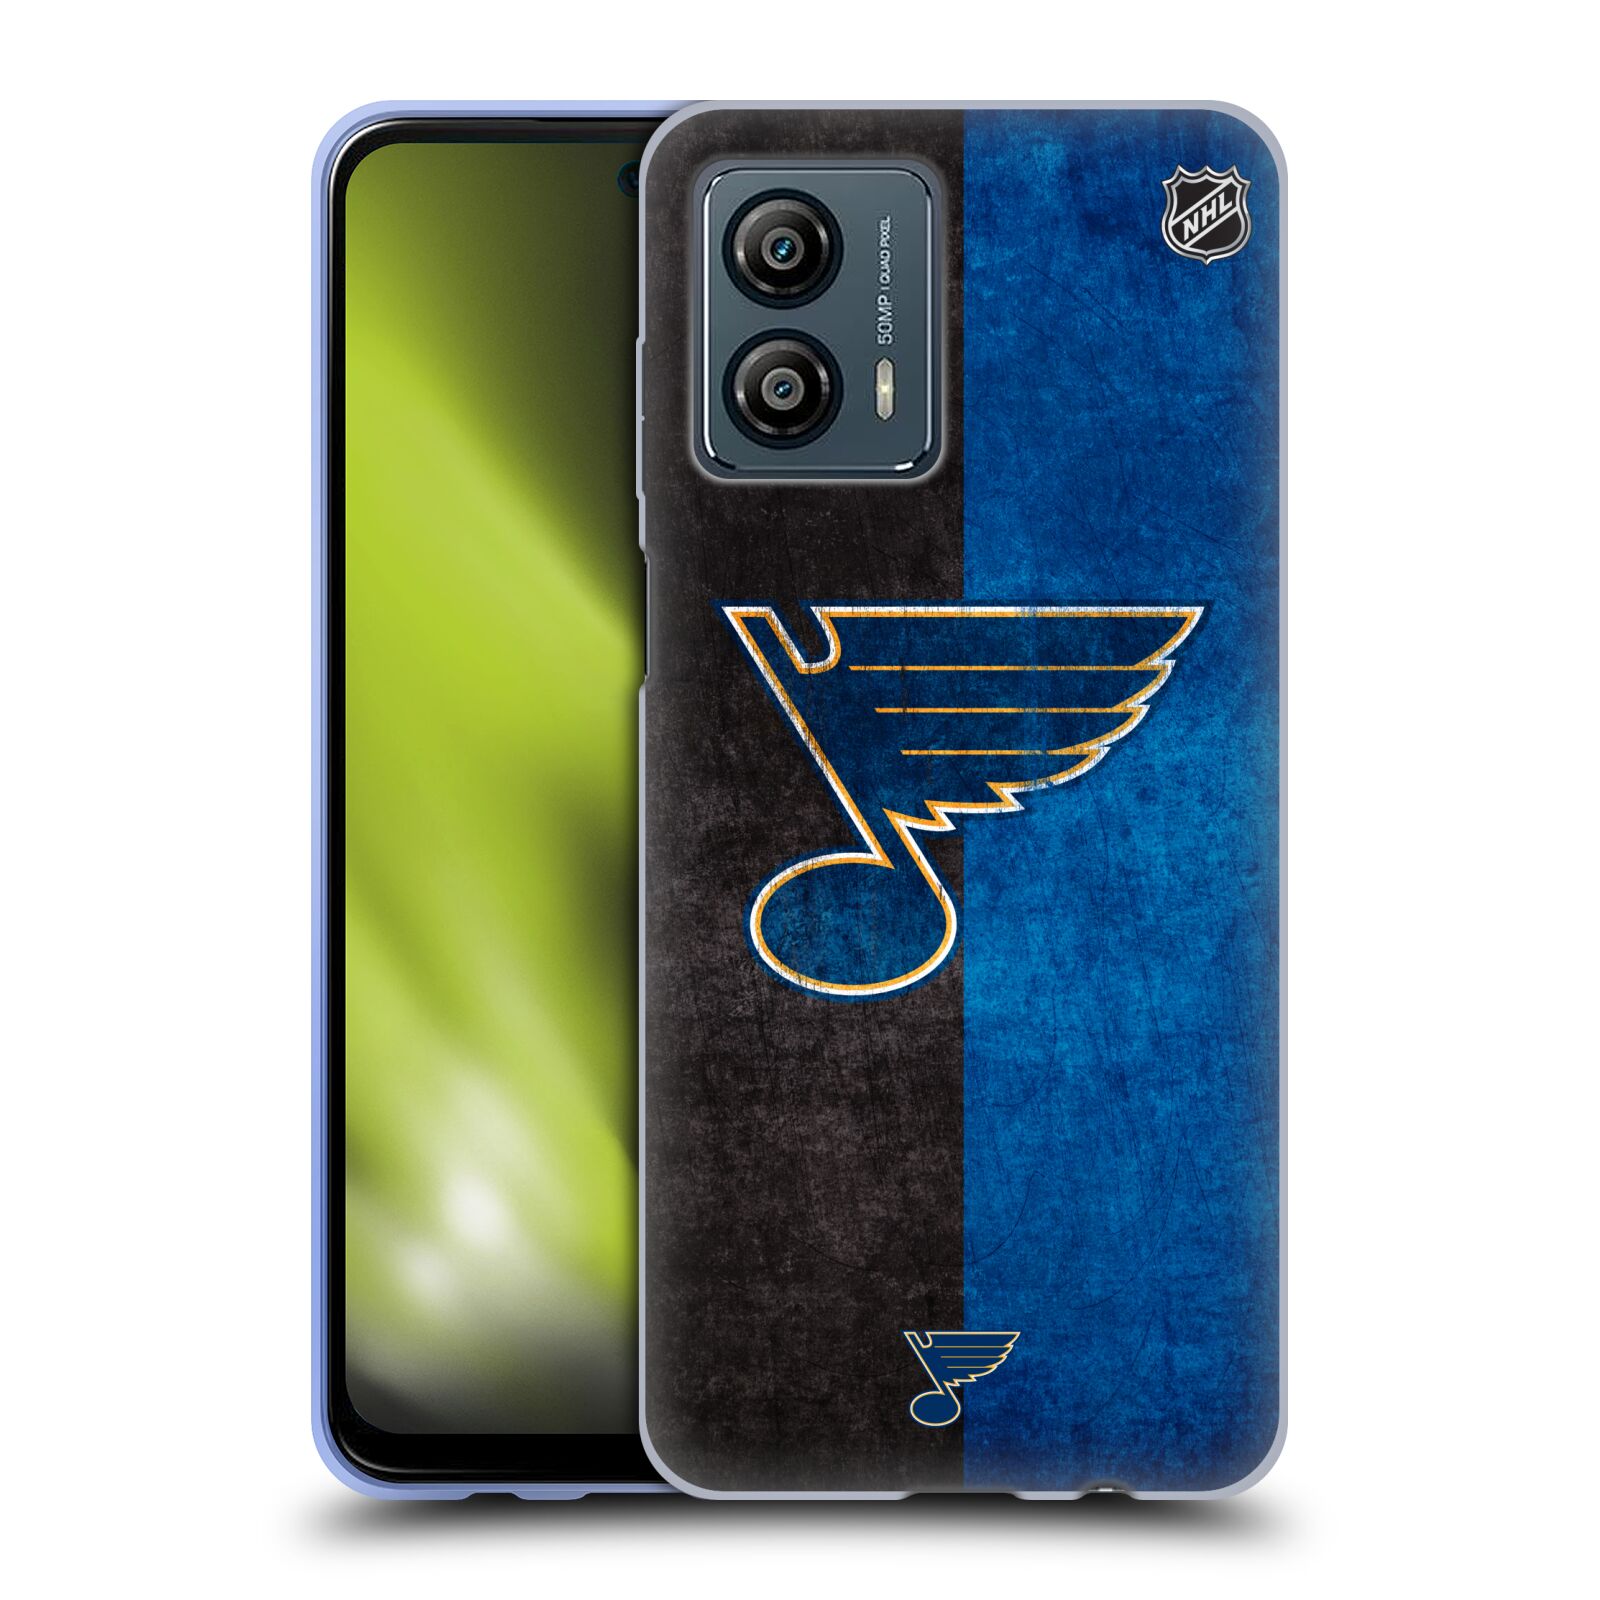 Silikonové pouzdro na mobil Motorola Moto G53 5G - NHL - Půlené logo St Louis Blues (Silikonový kryt, obal, pouzdro na mobilní telefon Motorola Moto G53 5G s licencovaným motivem NHL - Půlené logo St Louis Blues)